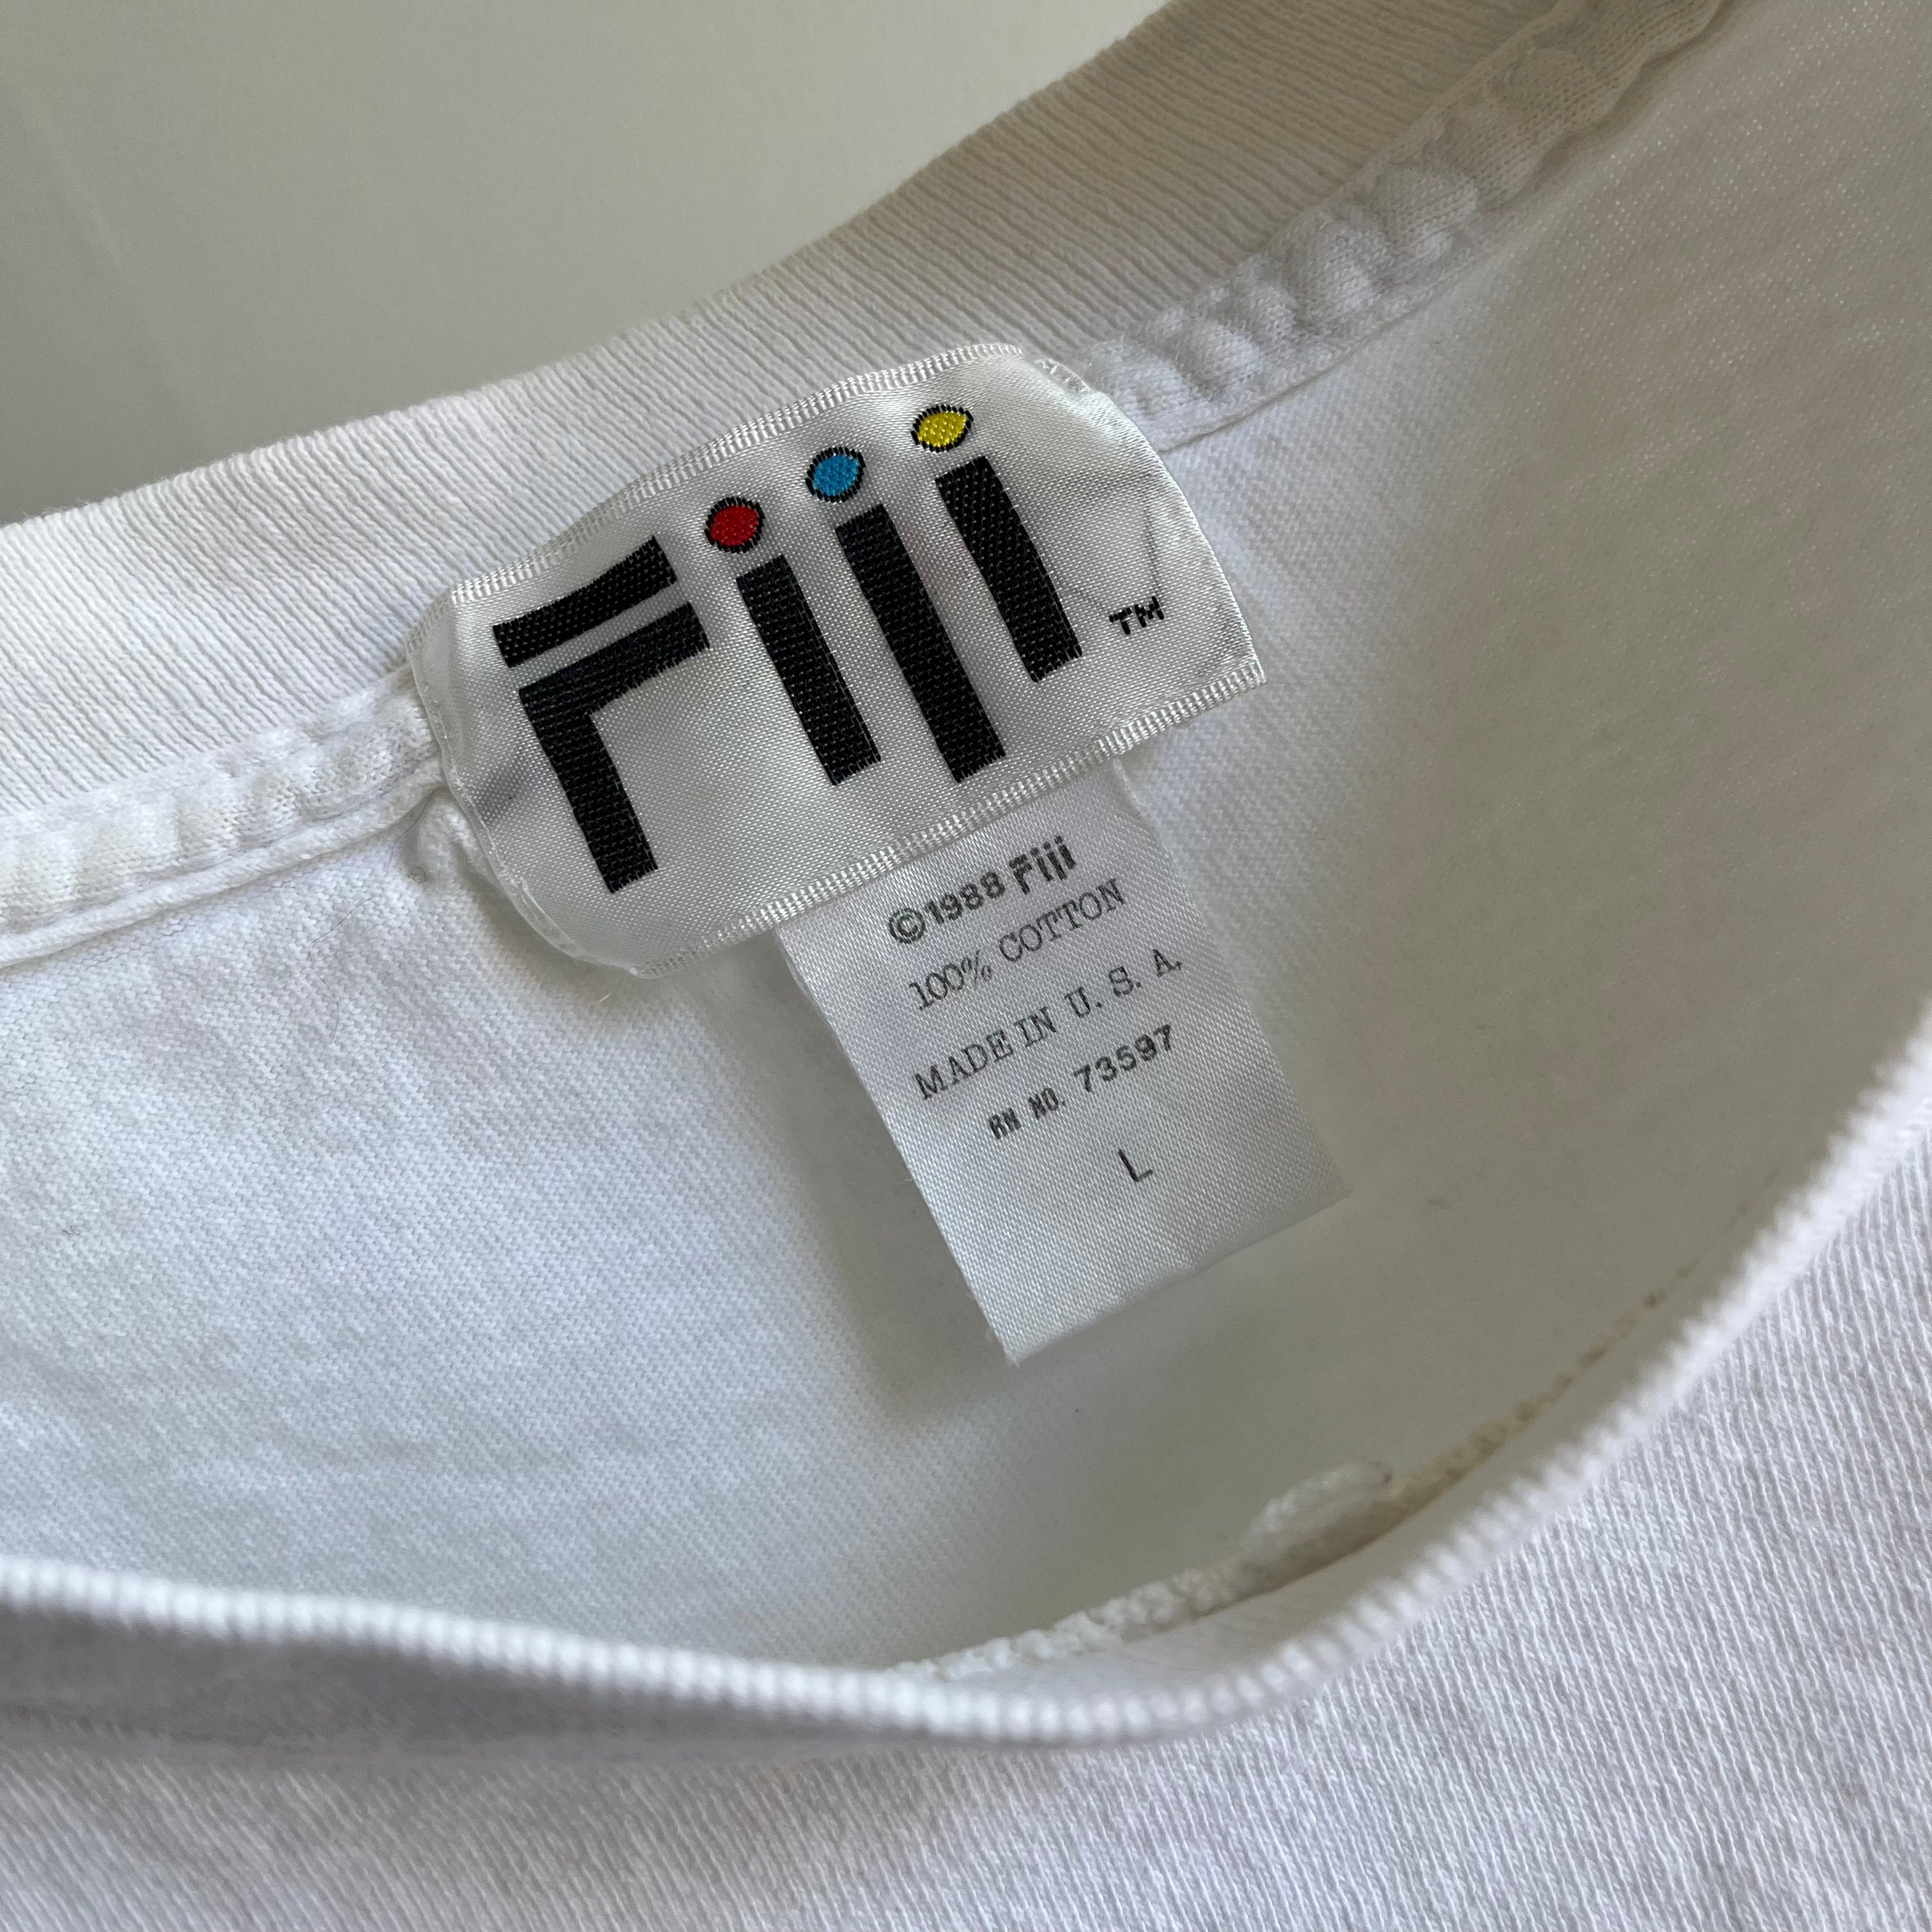 1988 Fiji Boxy Cotton T-Shirt